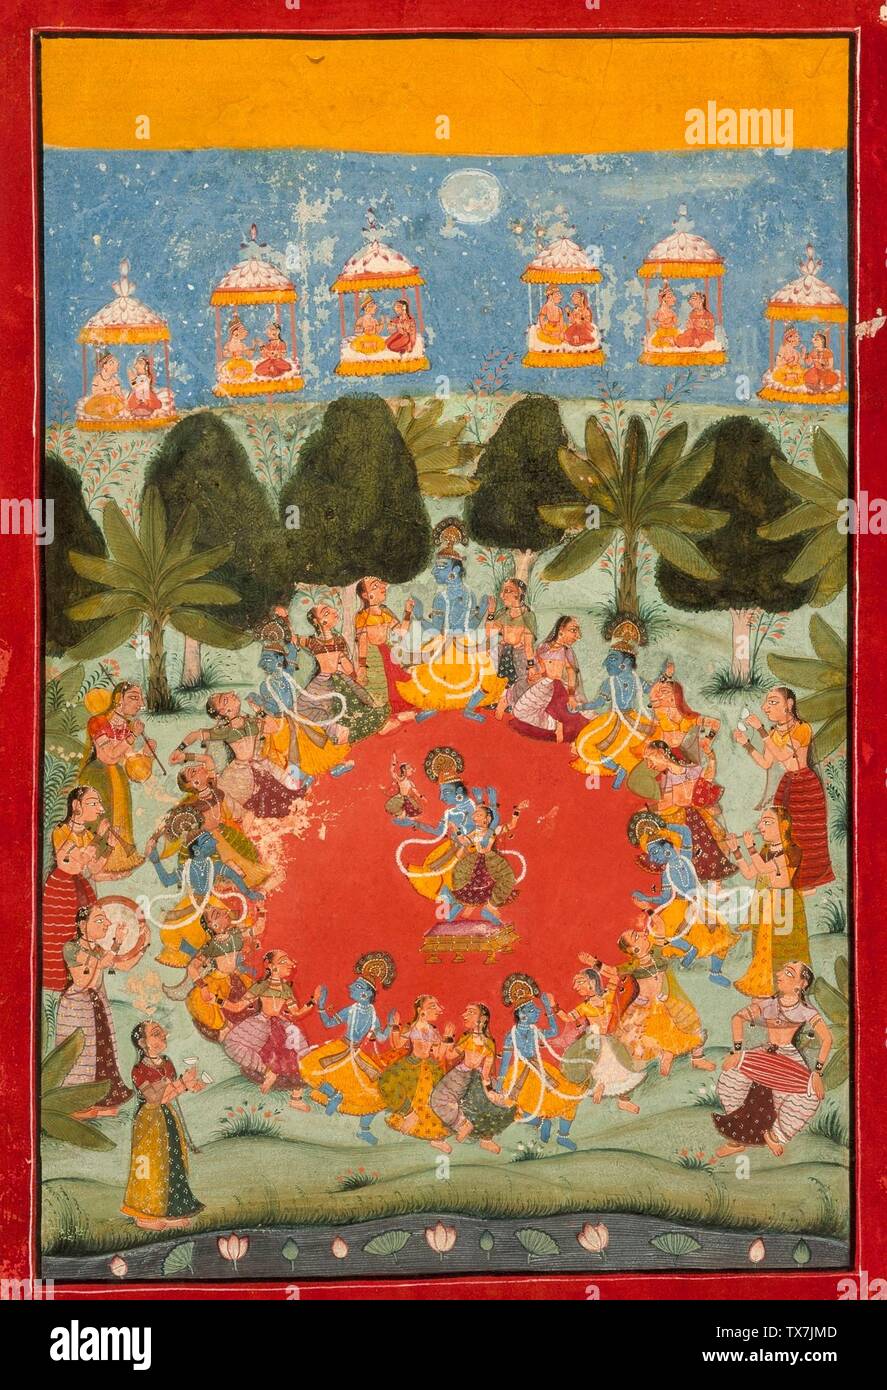 Krishnas Tanz der Freude (Rasa Lila); Indien, Rajasthan, Bundi, ca. 1675-1700 Zeichnungen; Aquarelle Opakes Aquarell und Gold auf Papier Bild: 11 7/8 x 8 1/2 Zoll. (30,16 x 21,59 cm); Blatt: 14 3/8 x 9 3/4 Zoll (36,51 x 24,76 cm) Museumserwerb (M.75.66) Süd- und südostasiatische Kunst; zwischen ca. 1675 und ca. 1700 Datum QS:P571,+1500-00-00T00:00:00Z/6,P1319,+1675-00-00T00:00:00Z/9,P1326,+1700-00-2700; Stockfoto